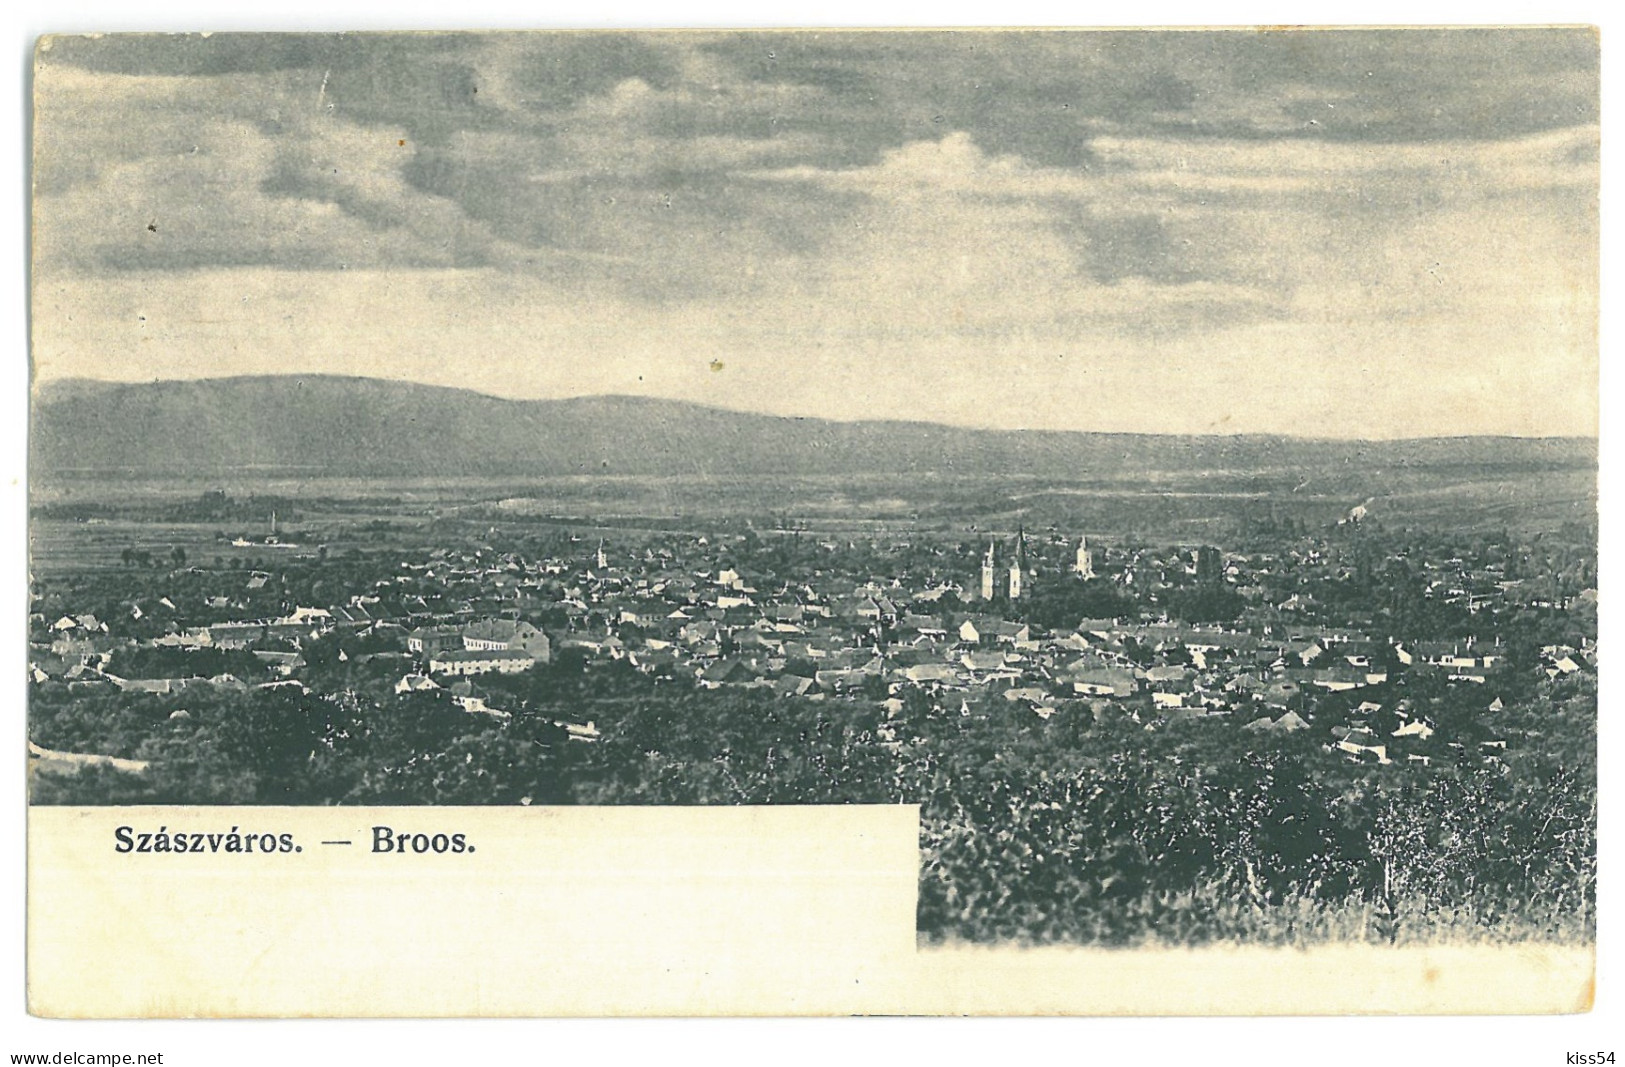 RO 35 - 23263 ORASTIE, Hunedoara, Panorama,  Romania - Old Postcard - Used - 1907 - Romania